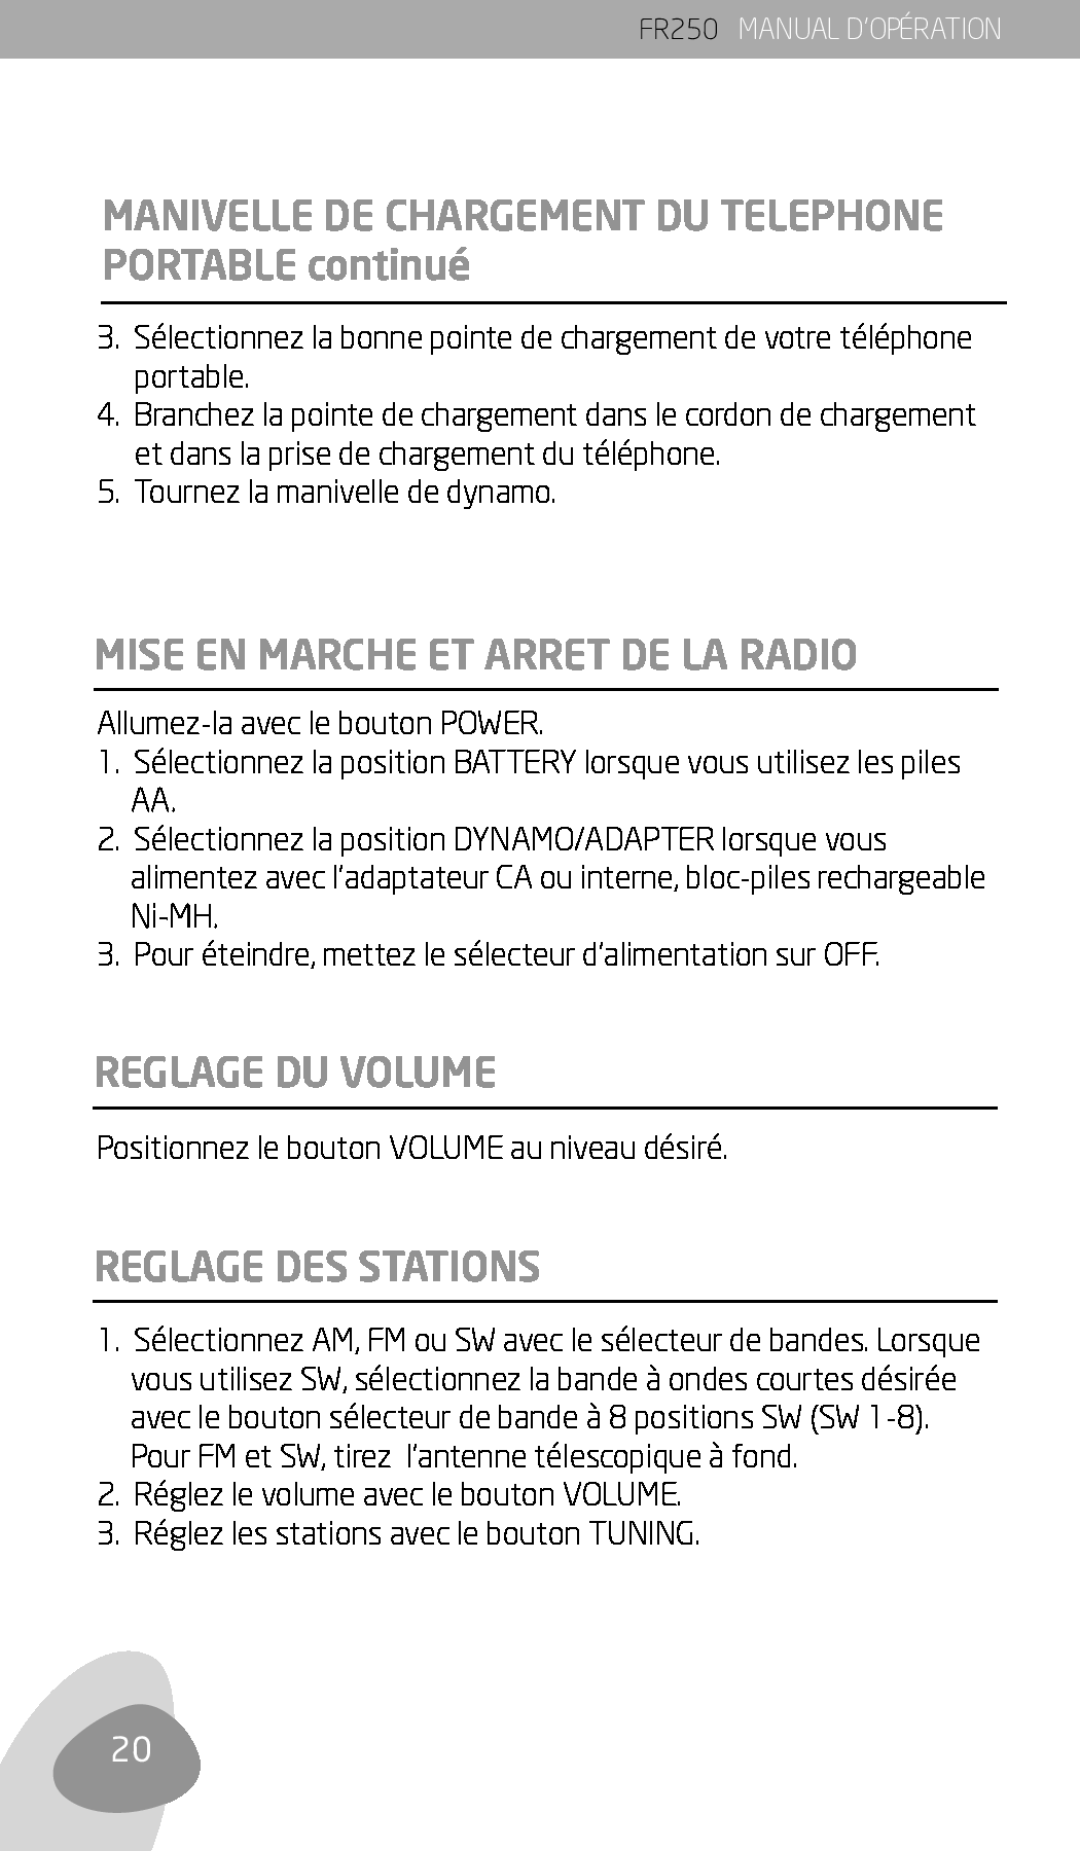 Eton FR250 owner manual Mise En Marche Et Arret De La Radio, Reglage Du Volume, Reglage Des Stations 